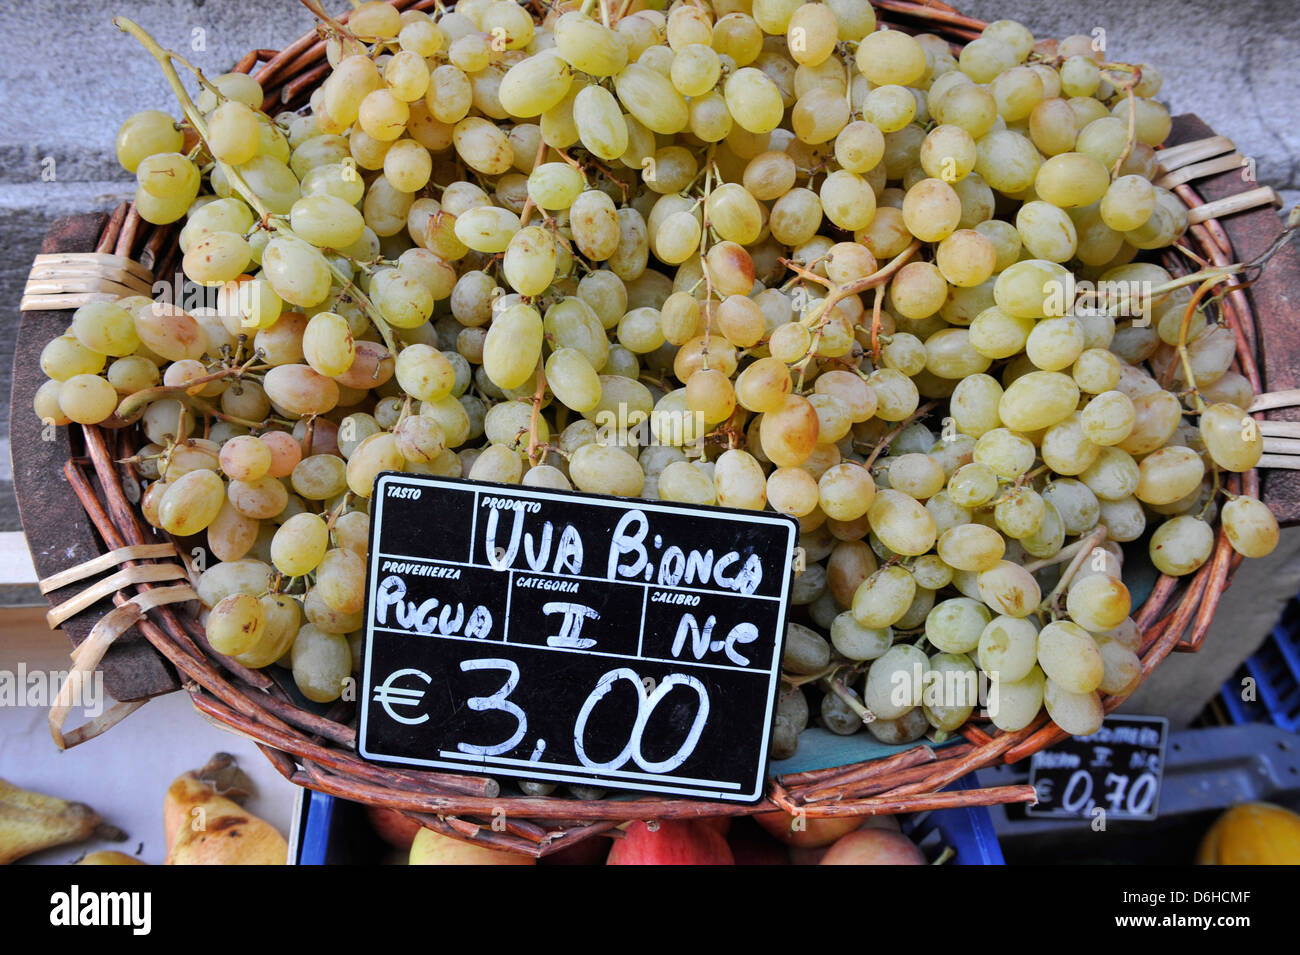 White grapes in an Italian market, Tuscany, Italy Stock Photo